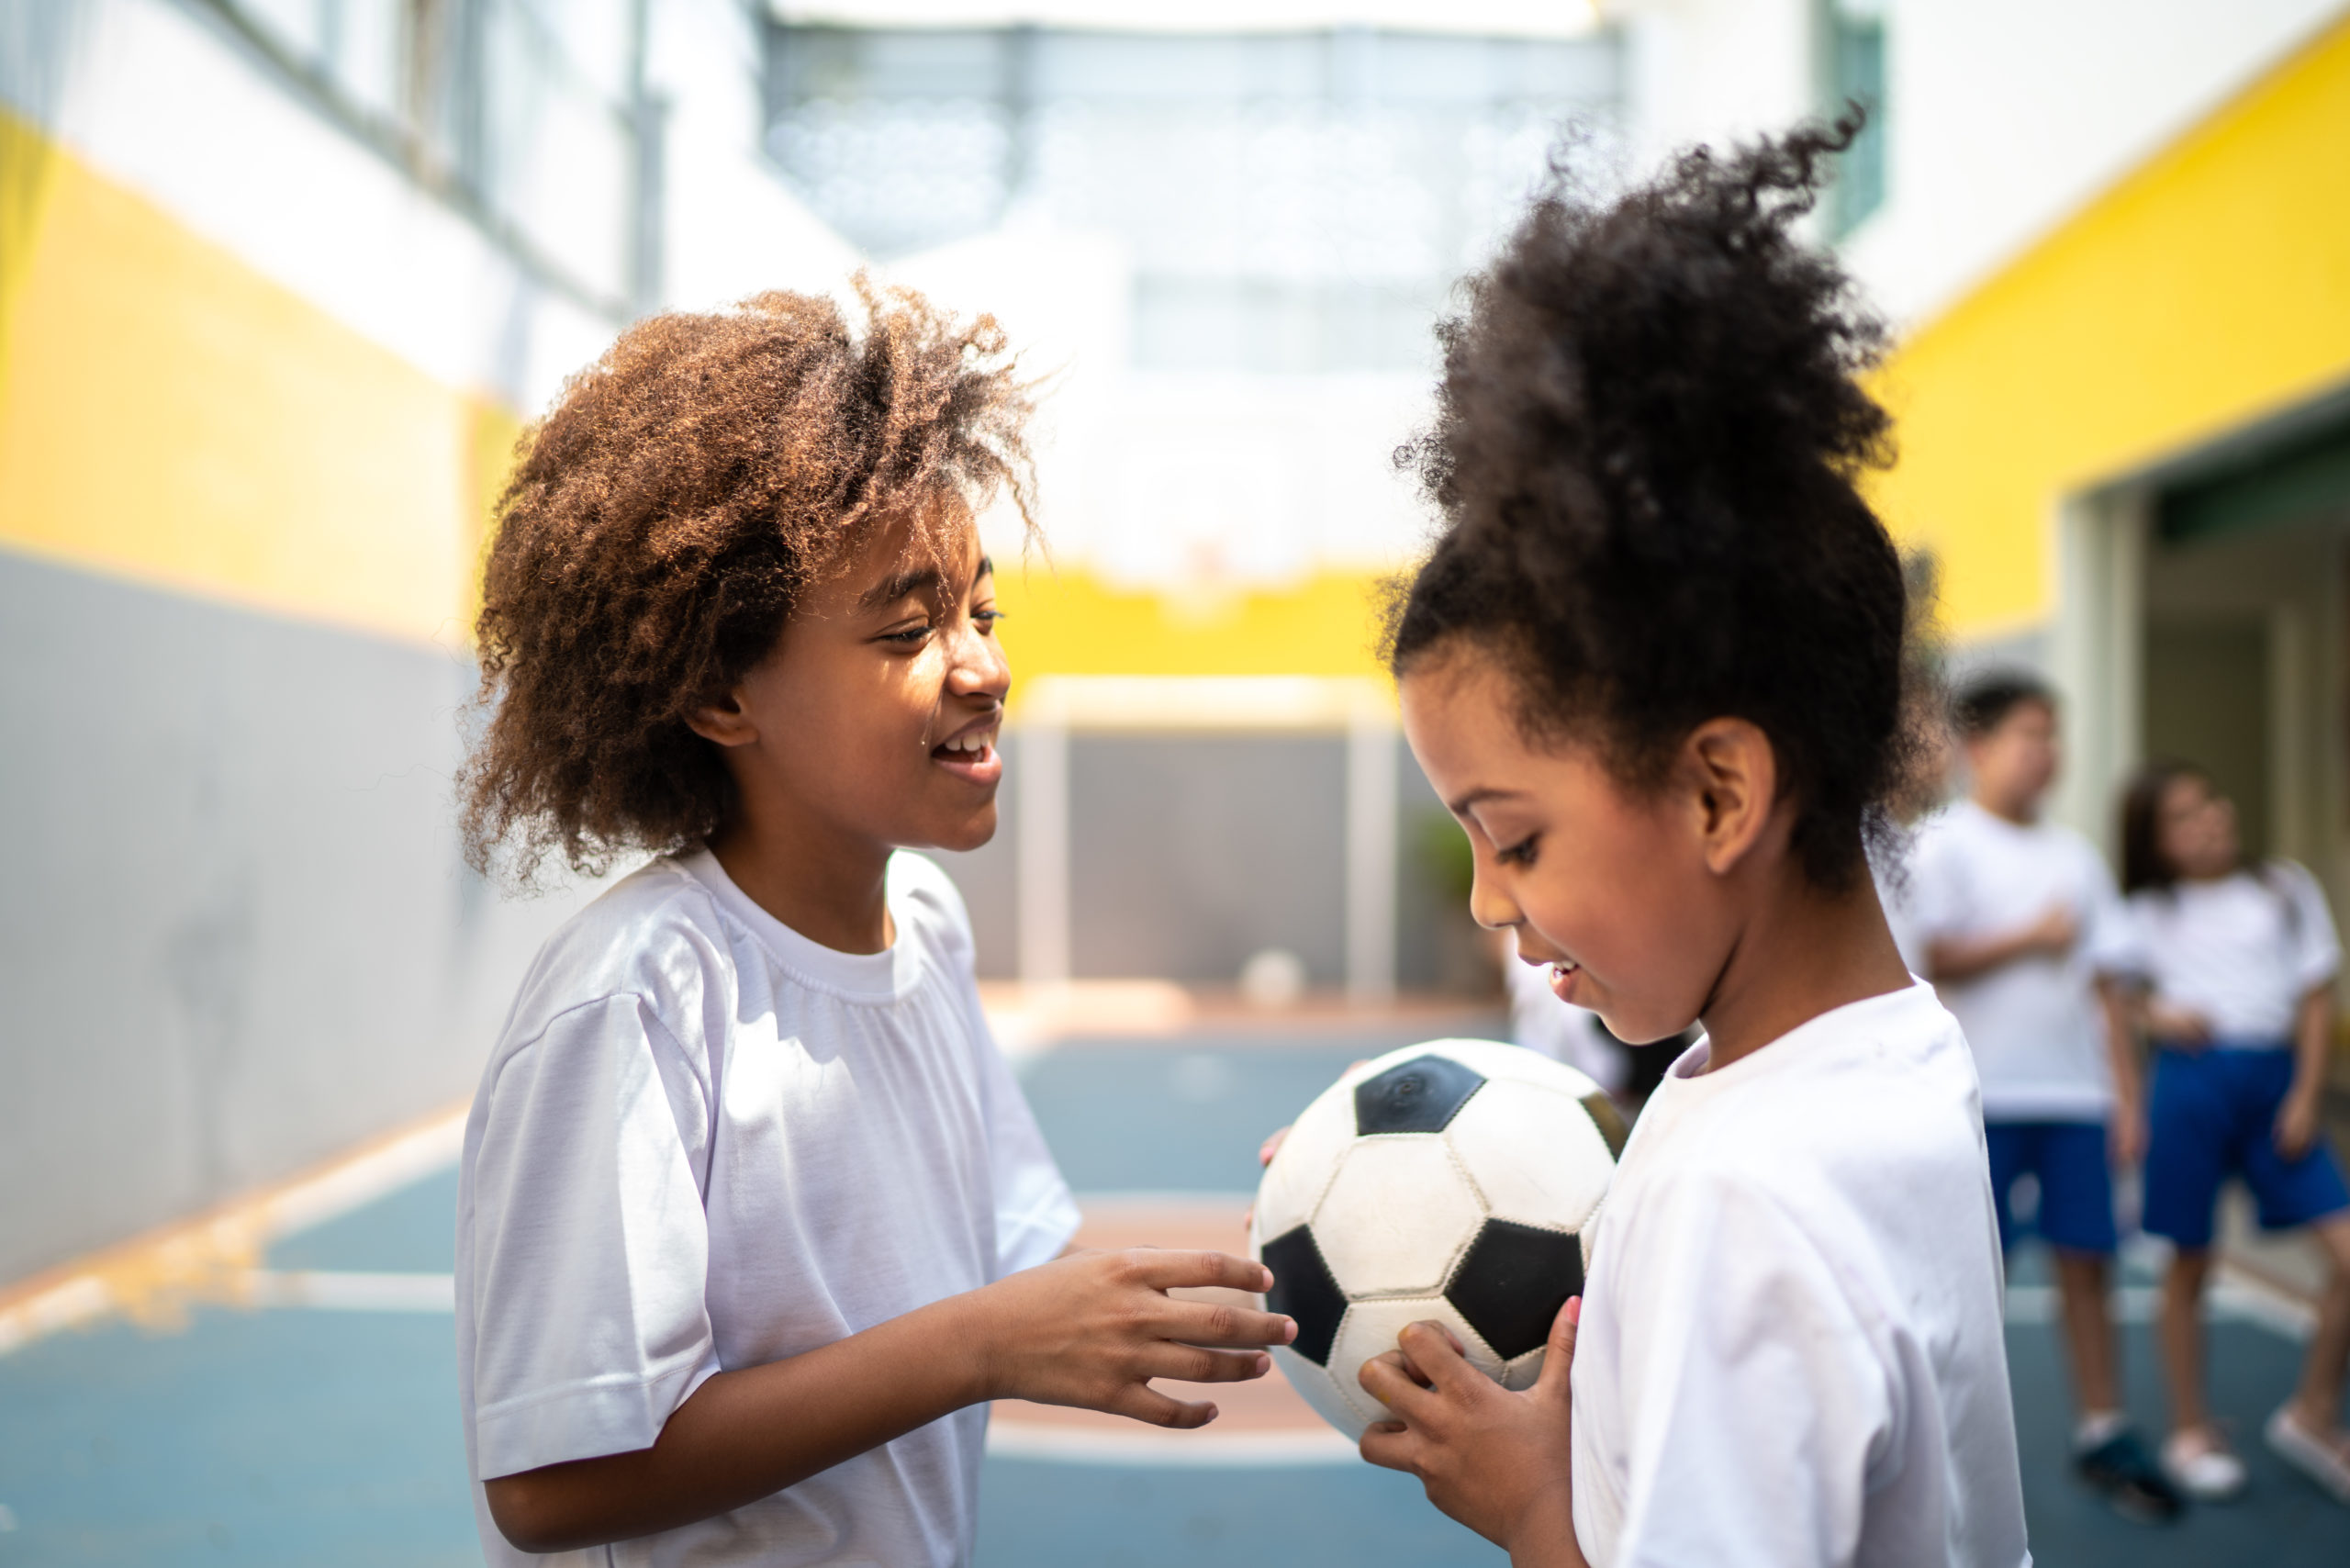 Duas meninas na aula de educação física com uma bola de futebol na mão